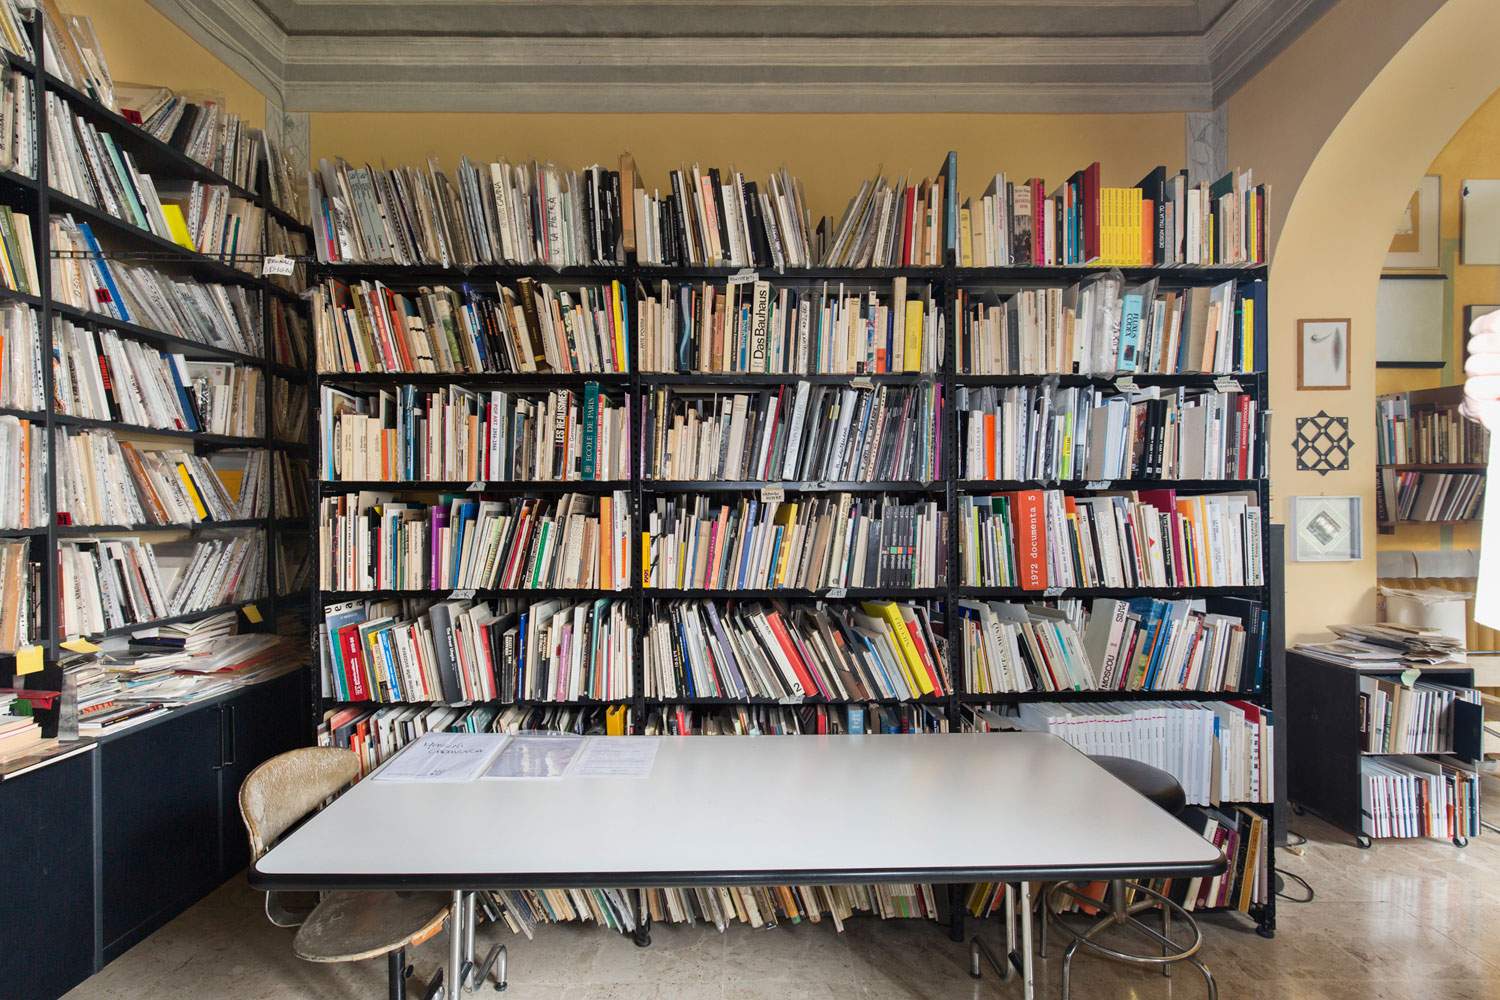 Nice coup for Prato's Pecci: museum acquires entire Lara-Vinca Masini library